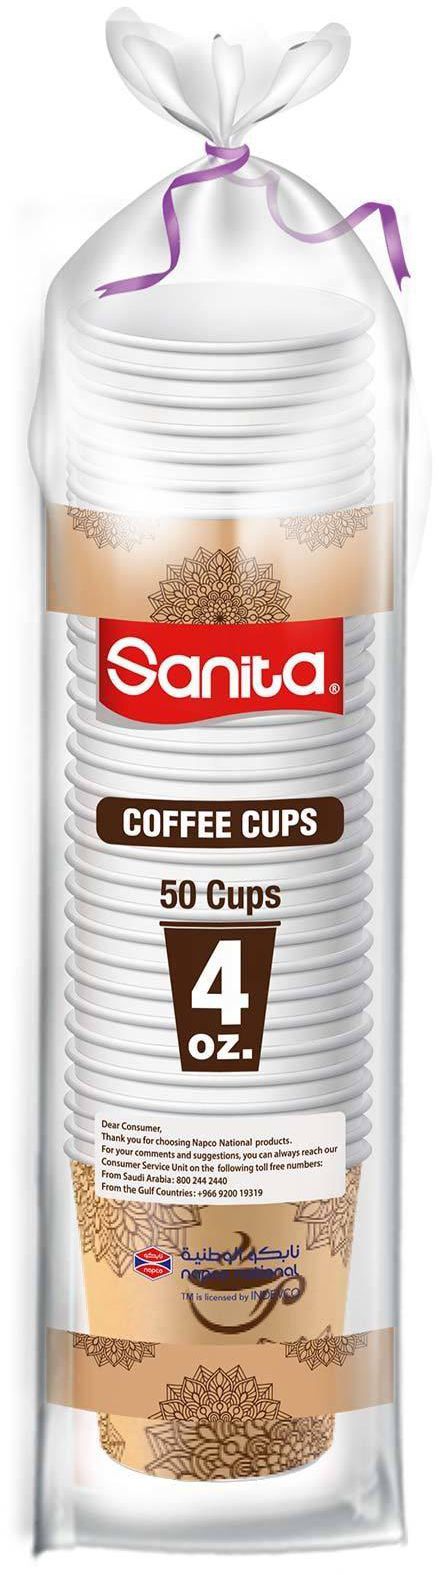 سانيتا أكواب قهوة 50 كوب